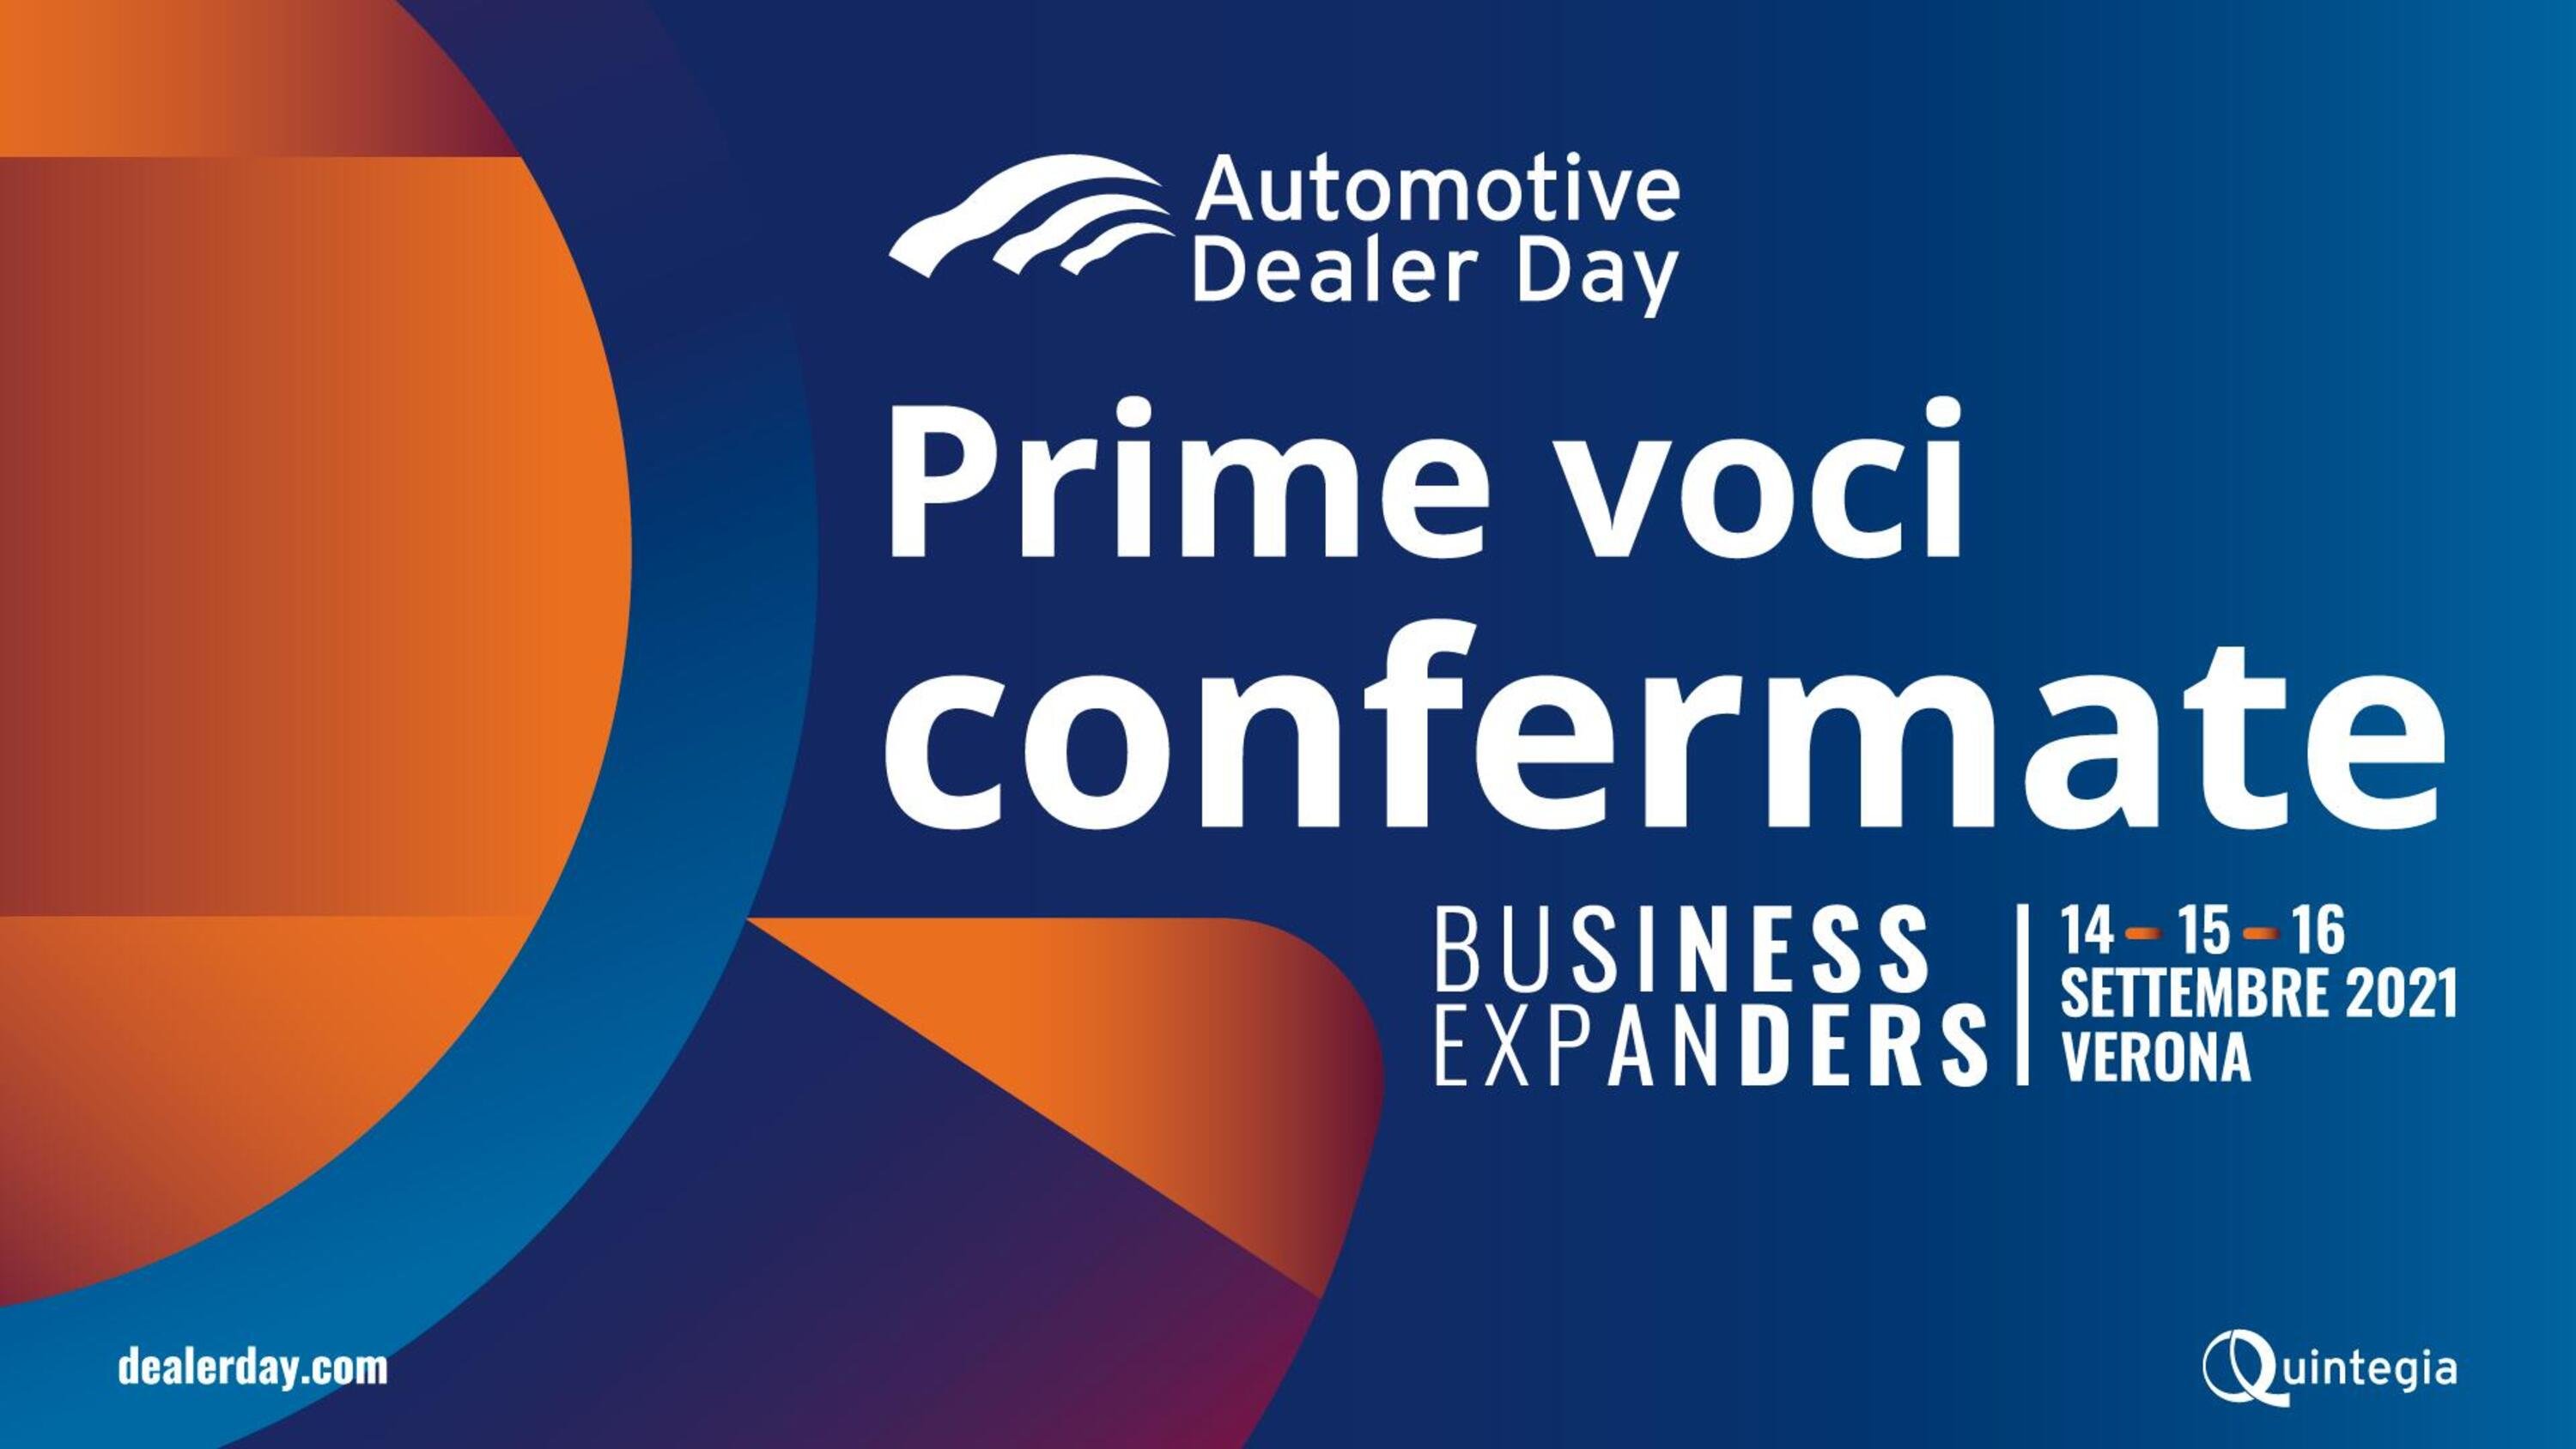 Domani parte Automotive Dealer Day 2021, A Veronafiere